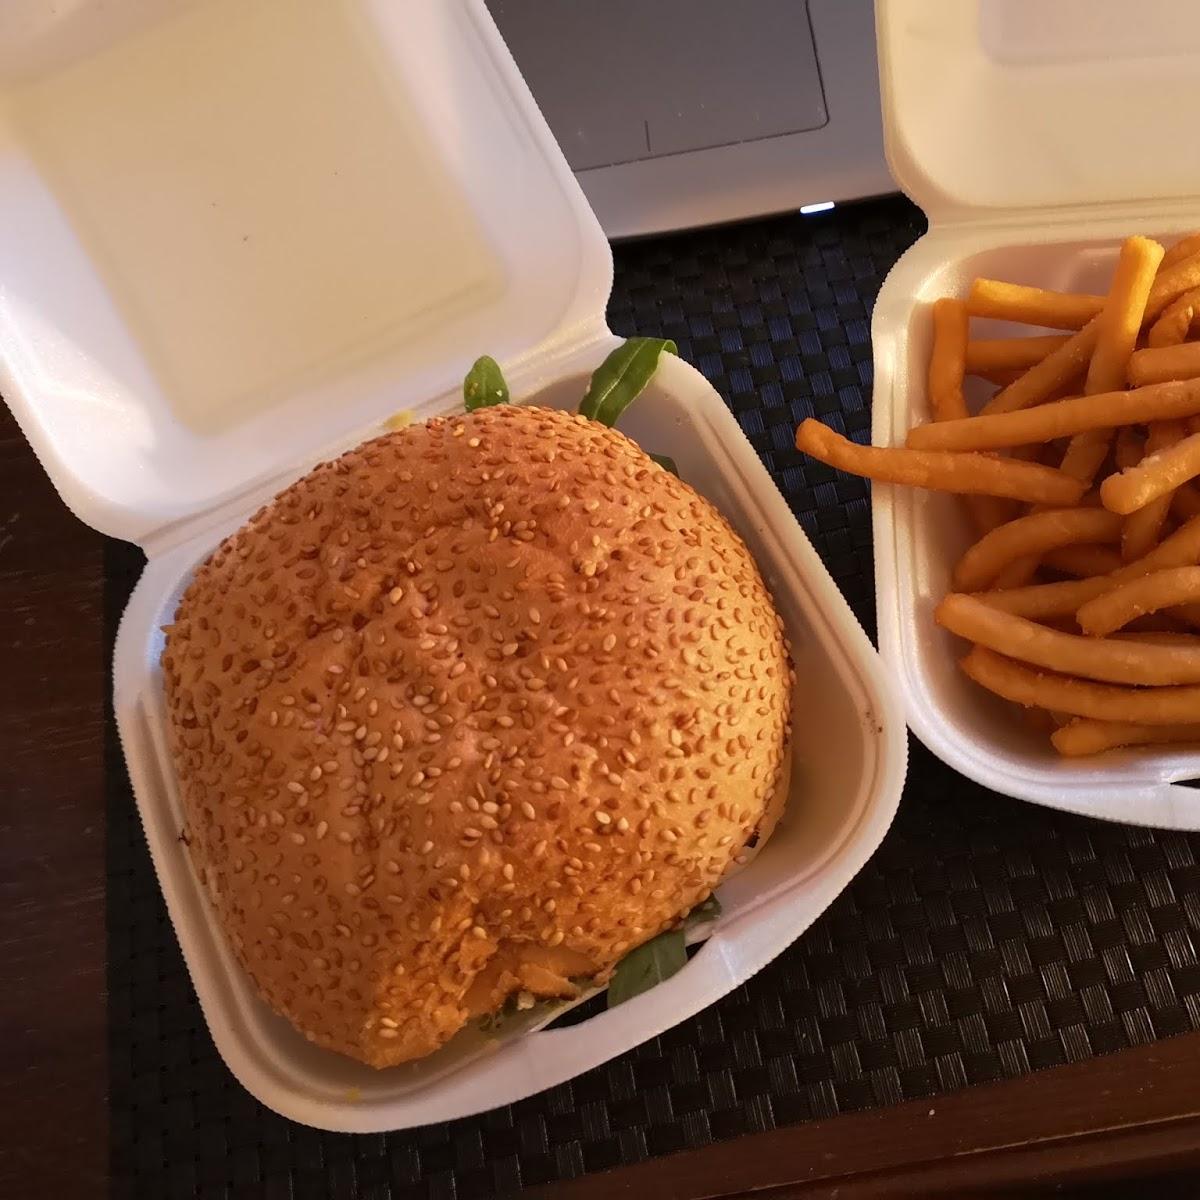 Restaurant "Burger Bully" in Stadtallendorf